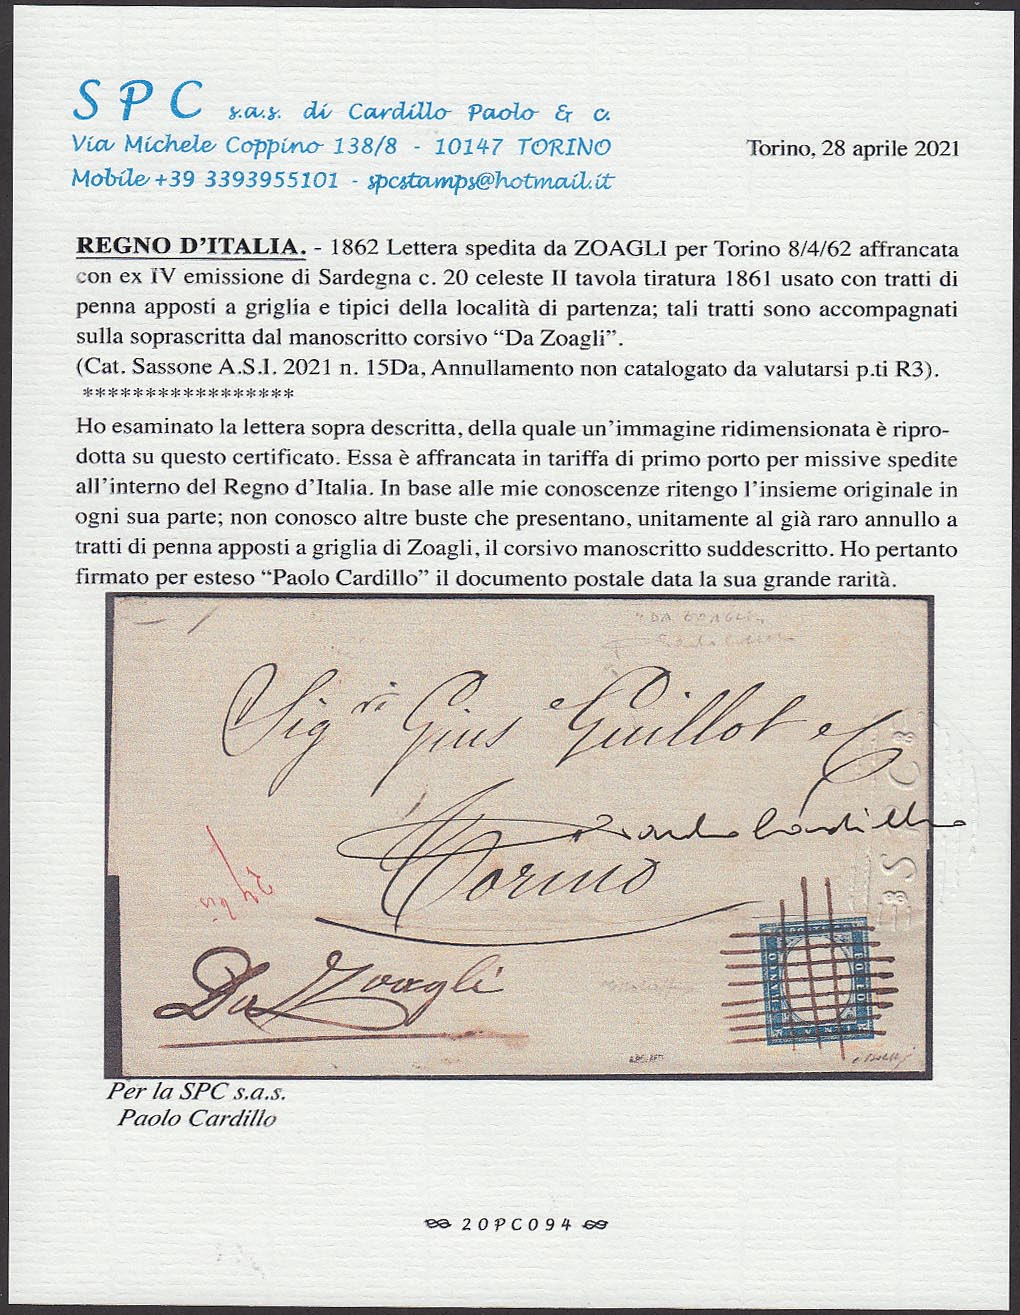 BA21-26 - 1862 - IV emissione, c.20 celeste II tavola su lettera da Zoagli per Torino 8/4/62, unico annullatore a tratti di penna incrociati (15Da, punti R1)